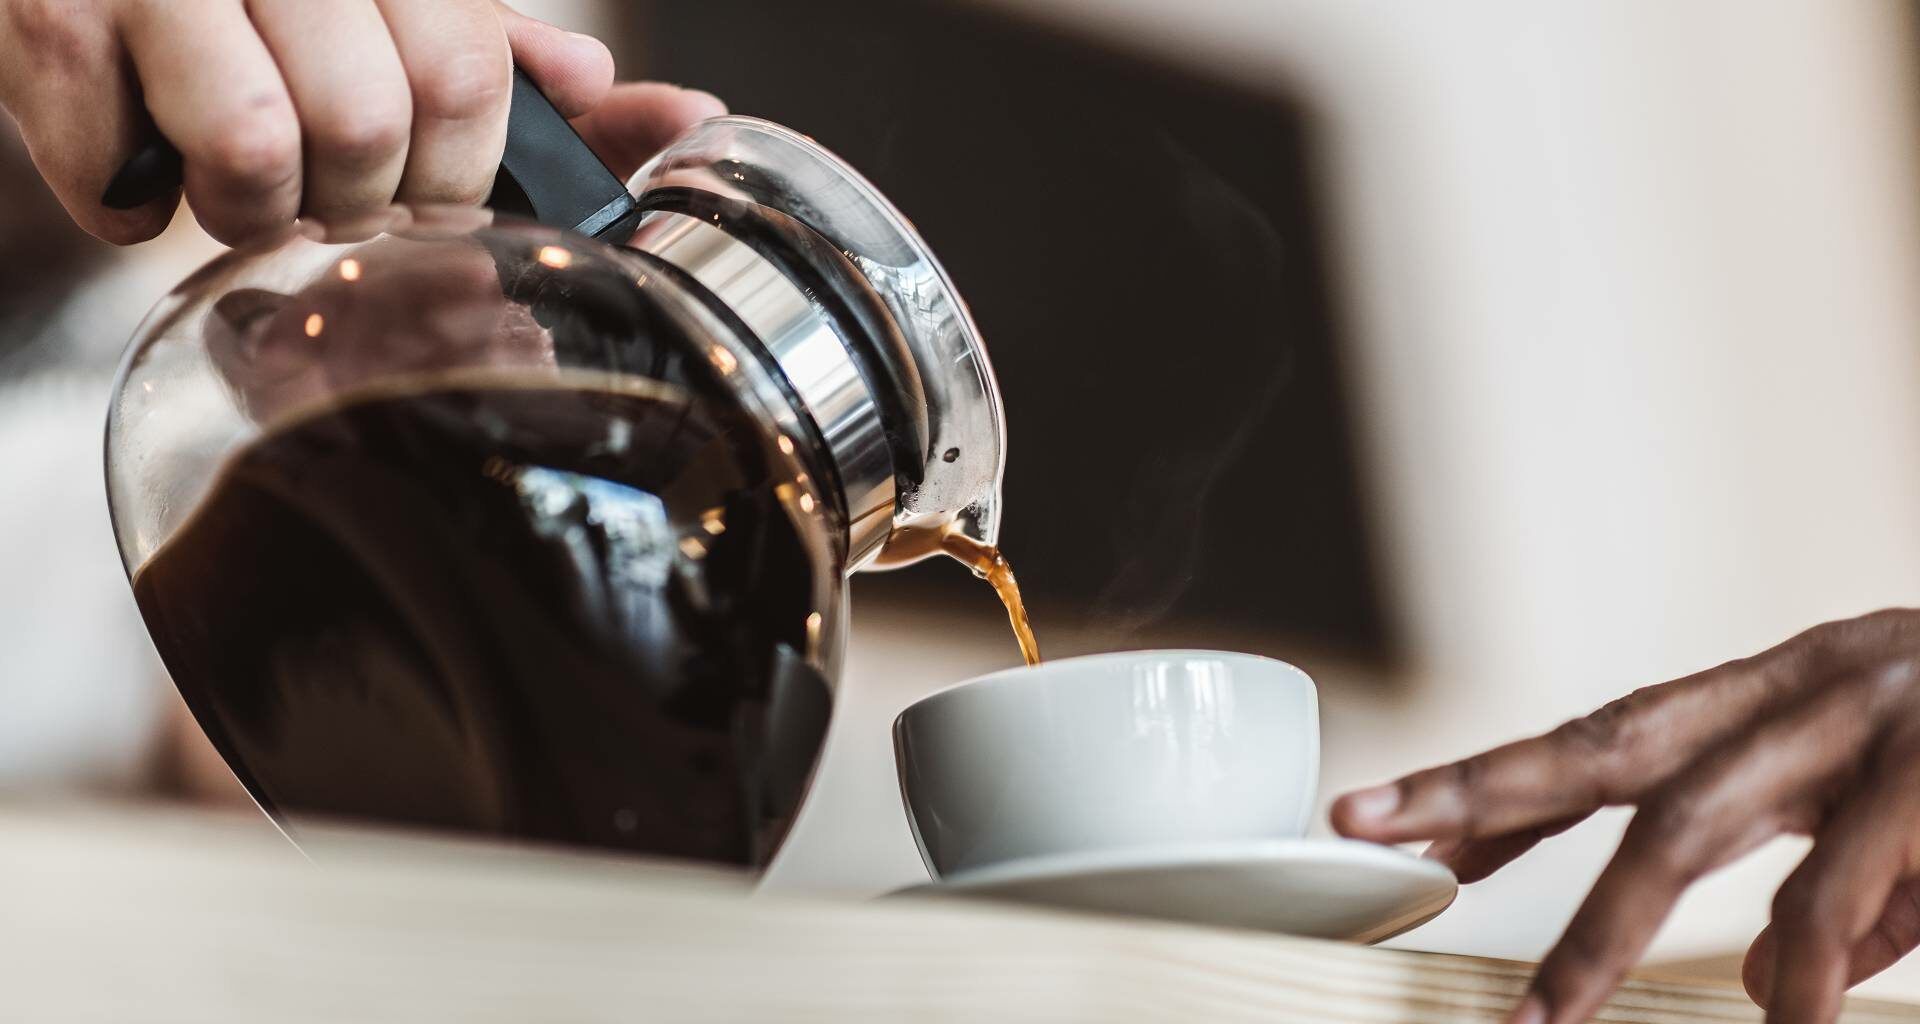 Vielleicht noch einen kleinen Kaffee dazu? Aus diesem Grund könnte Kaffee in der Post-Workout Phase förderlich für deine Regeneration sein